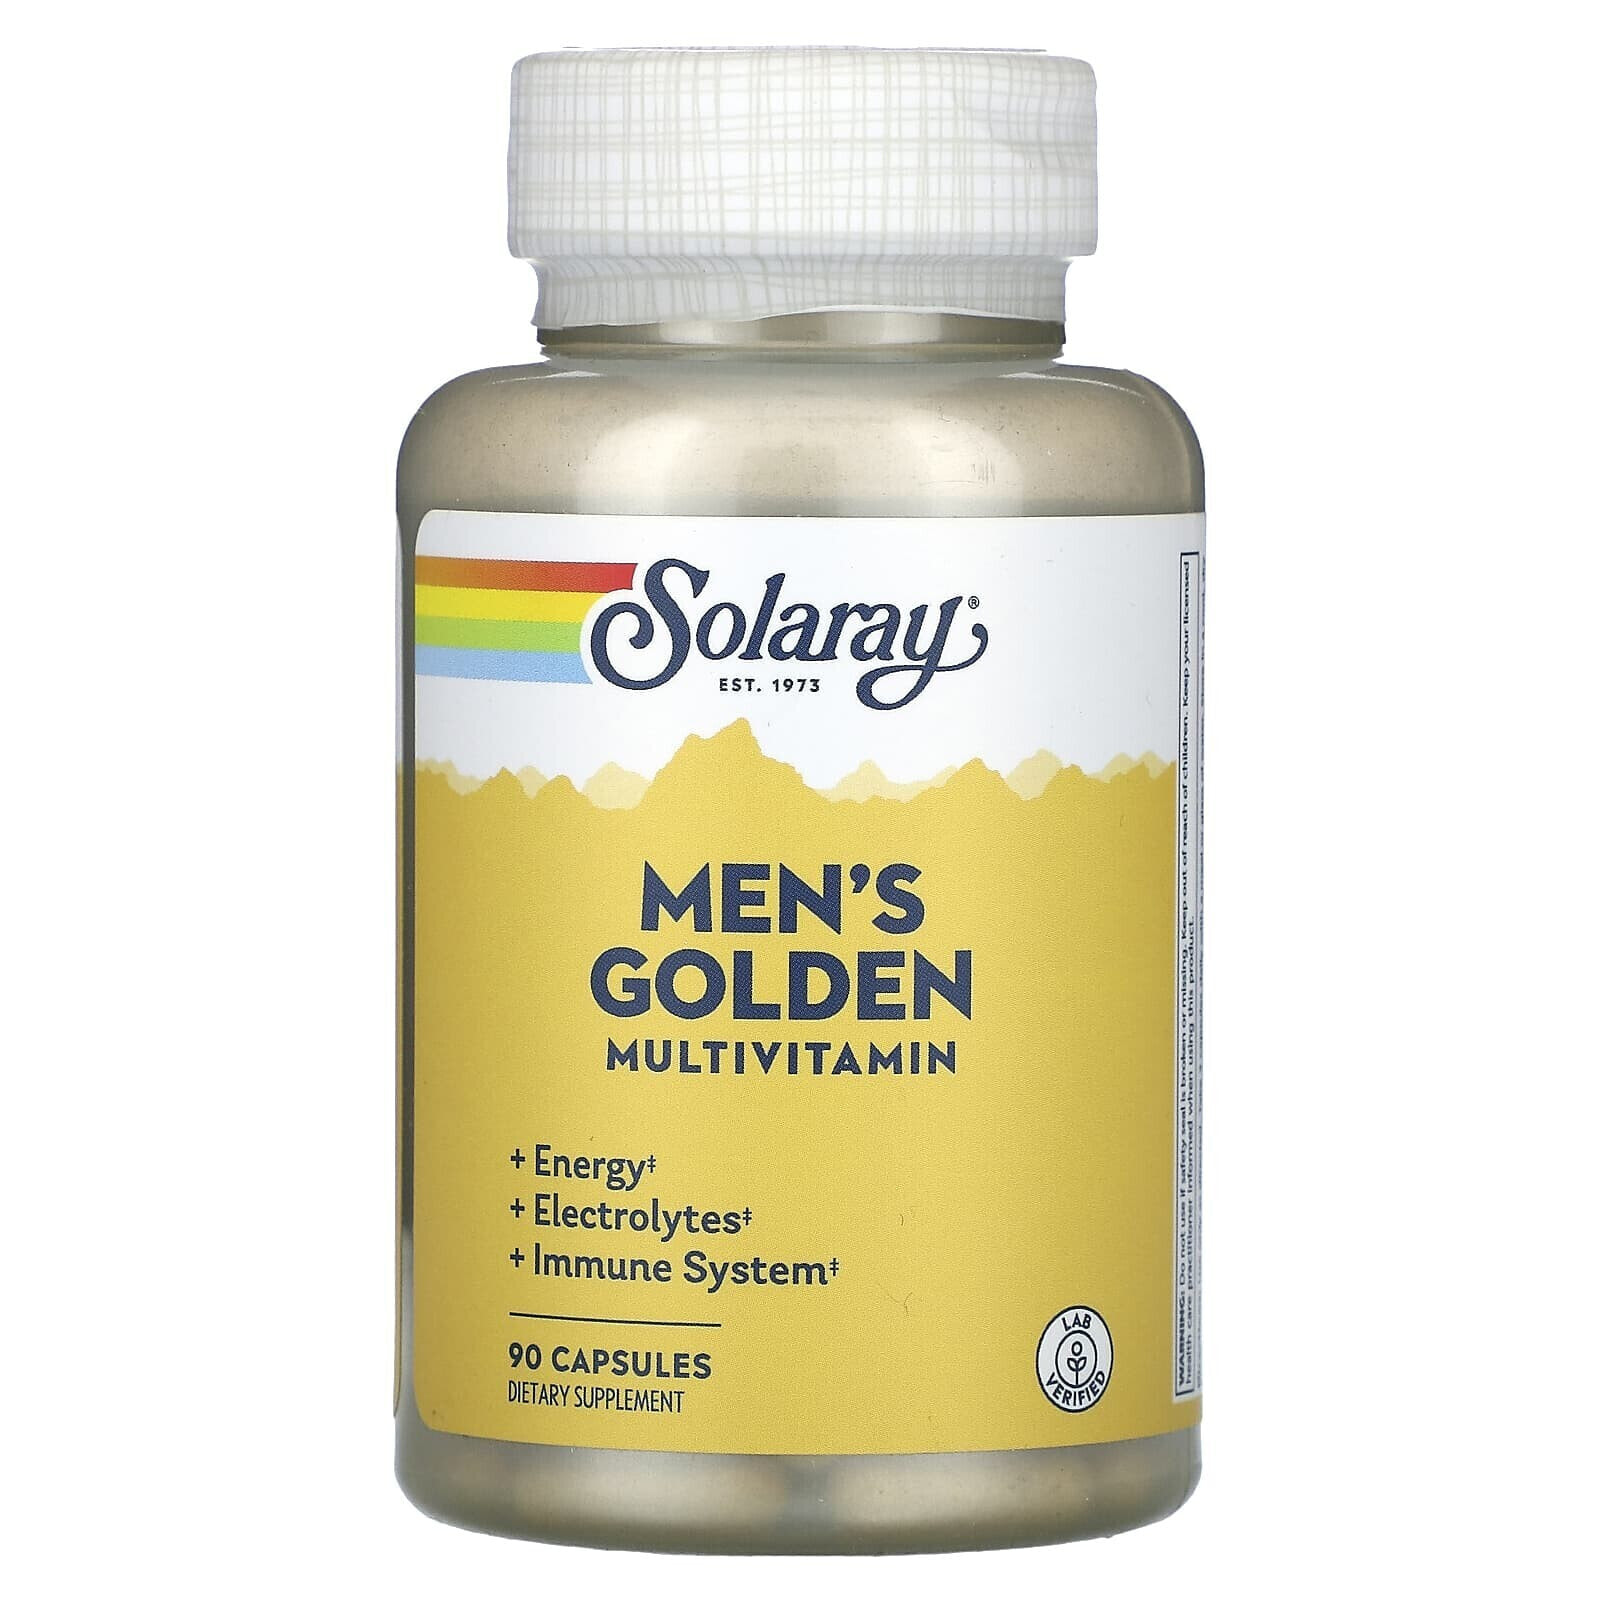 Men's Golden Multivitamin, 90 Capsules